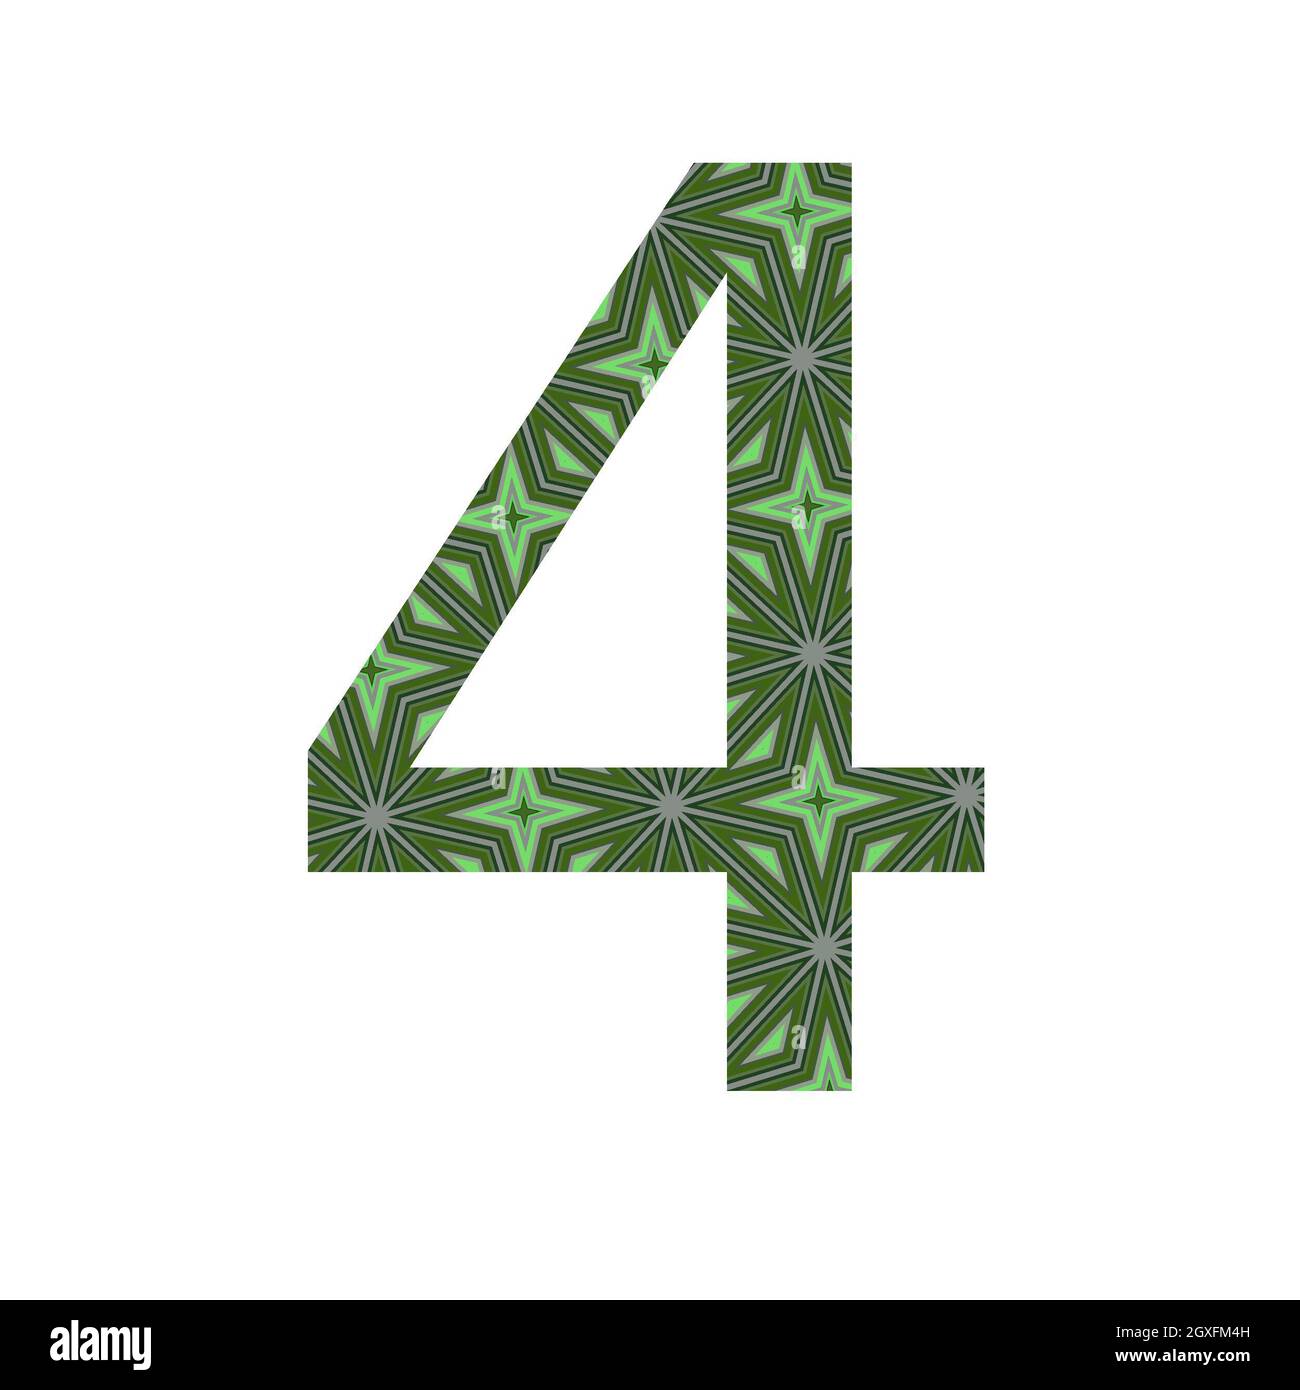 numero 4 dell'alfabeto realizzato con un motivo di stelle verdi, isolato su sfondo bianco Foto Stock